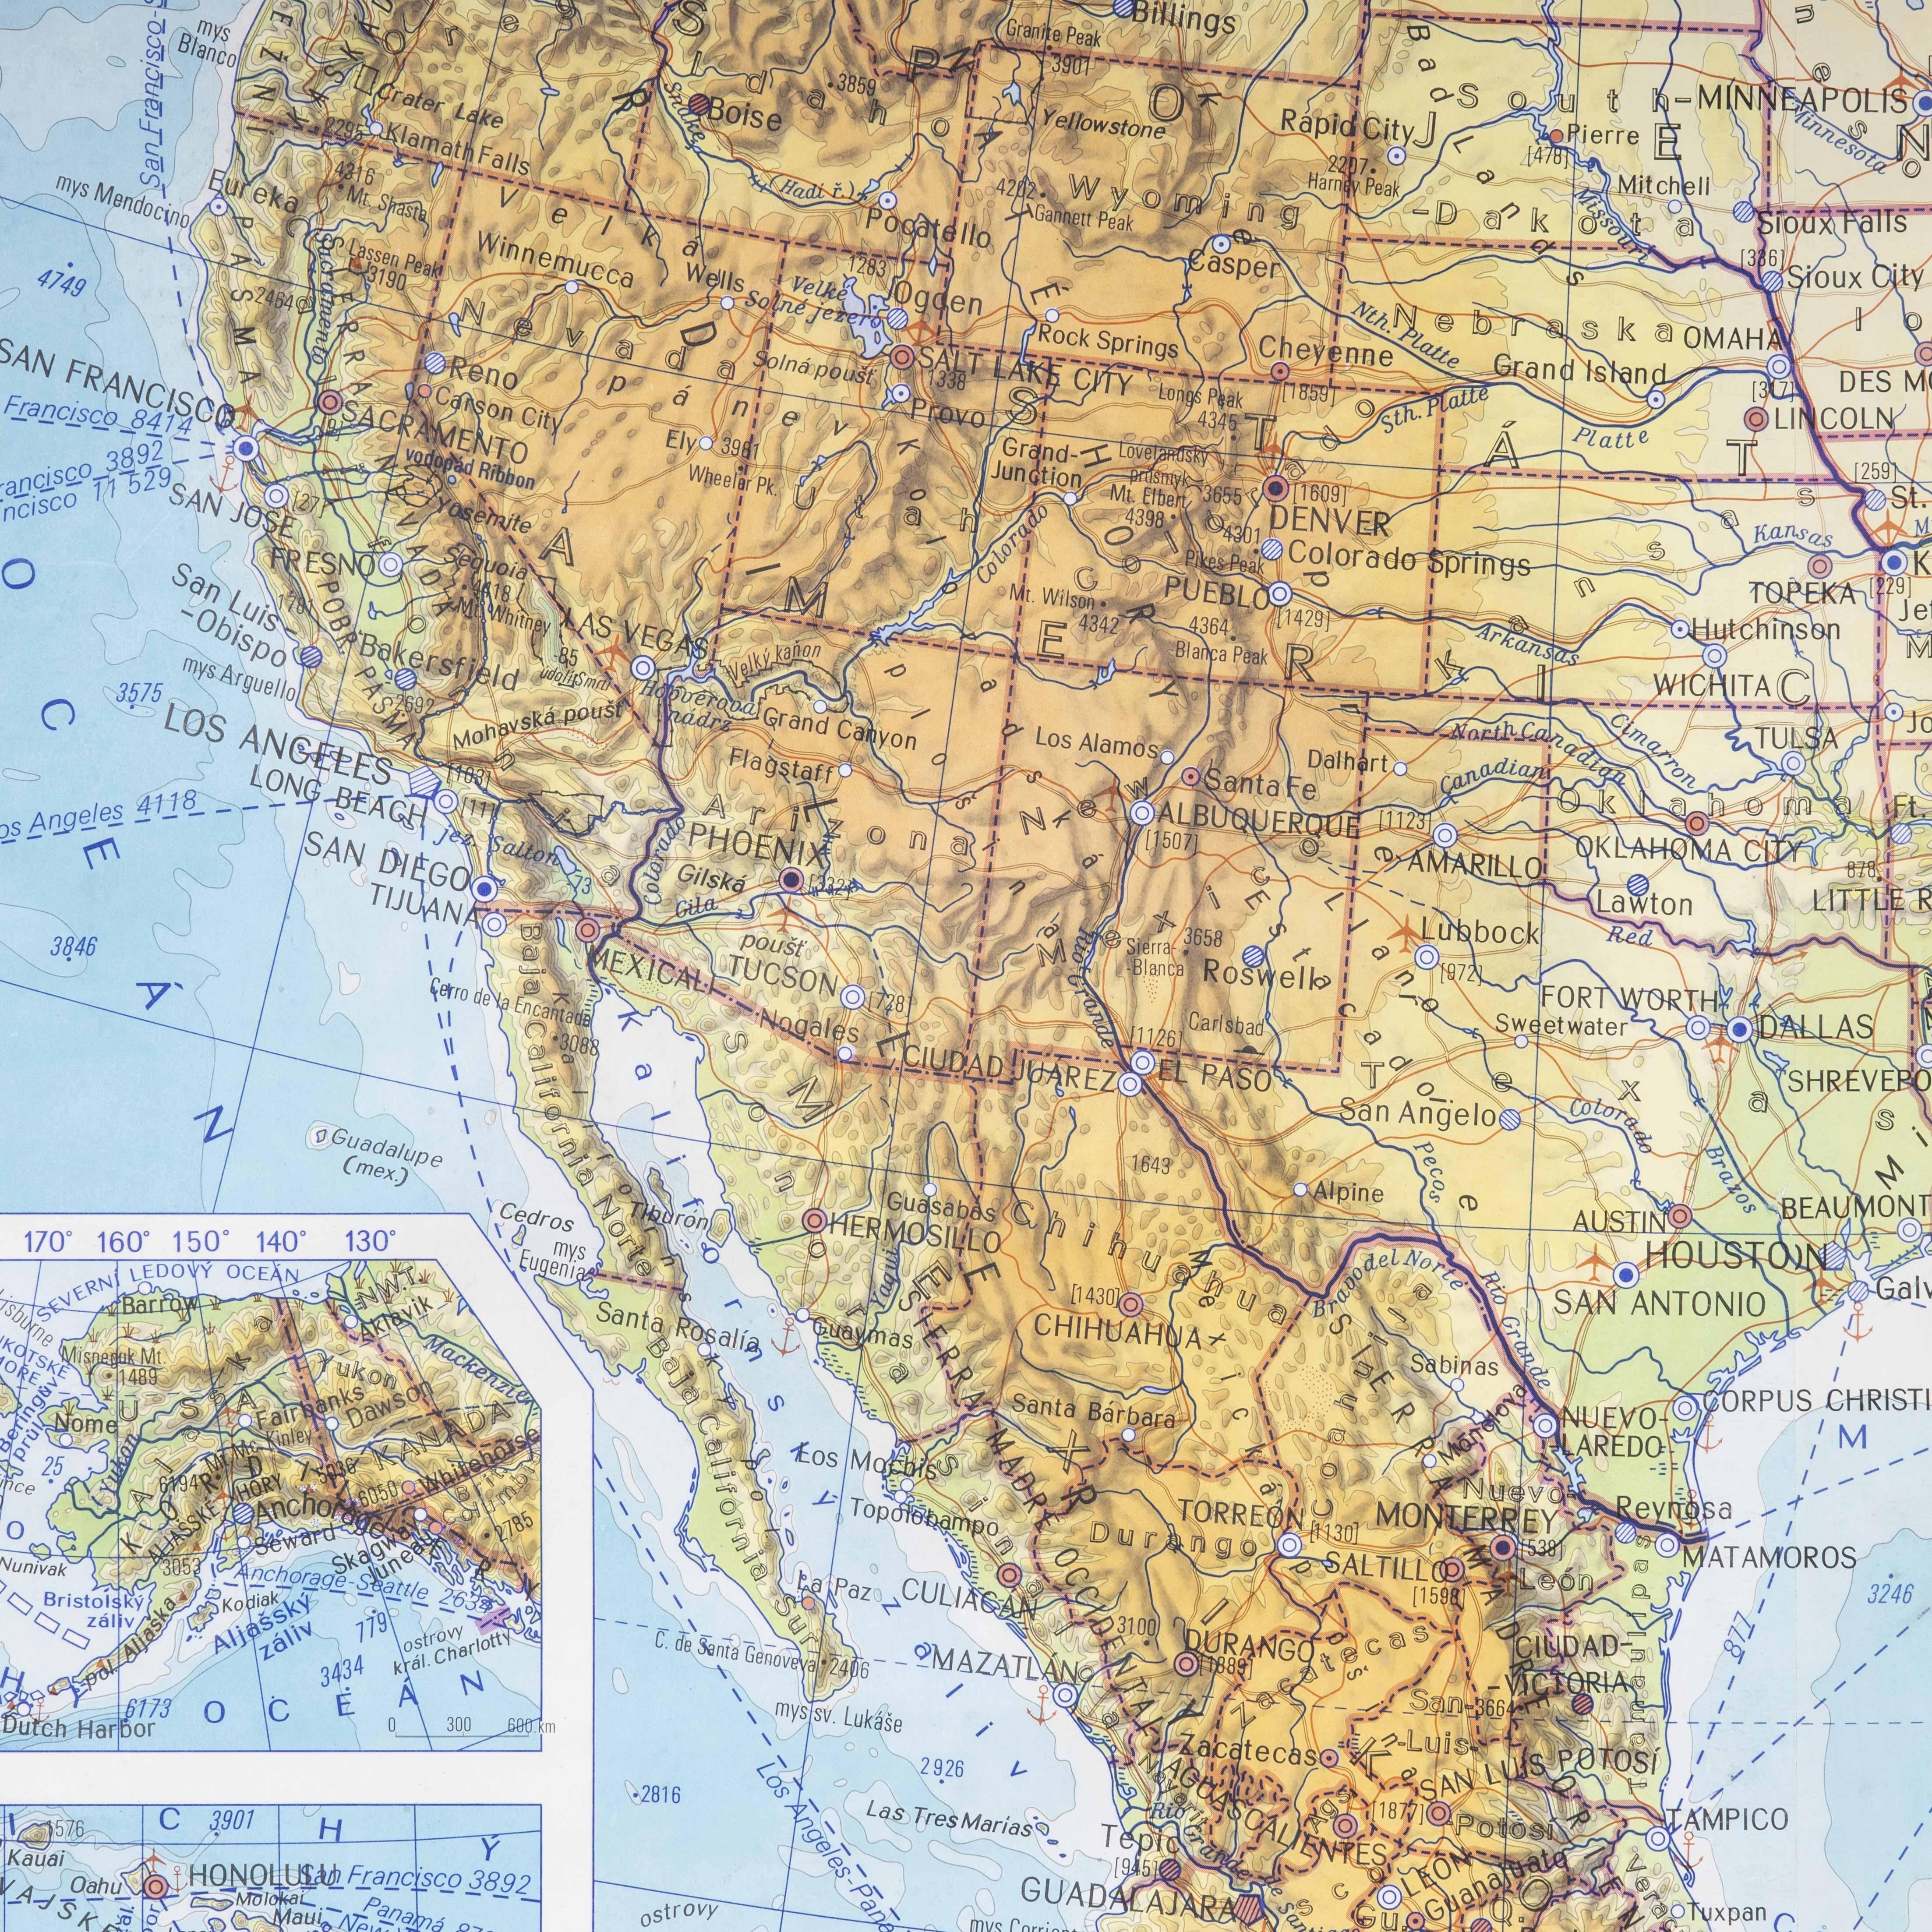 Geografische Bildungskarte des späten 20. Jahrhunderts - Topografie der USA
Geografische Bildungskarte des späten 20. Jahrhunderts - Topografie der USA. Qualitativ hochwertige, aufrollbare geografische Schulkarte aus der Tschechischen Republik. Die